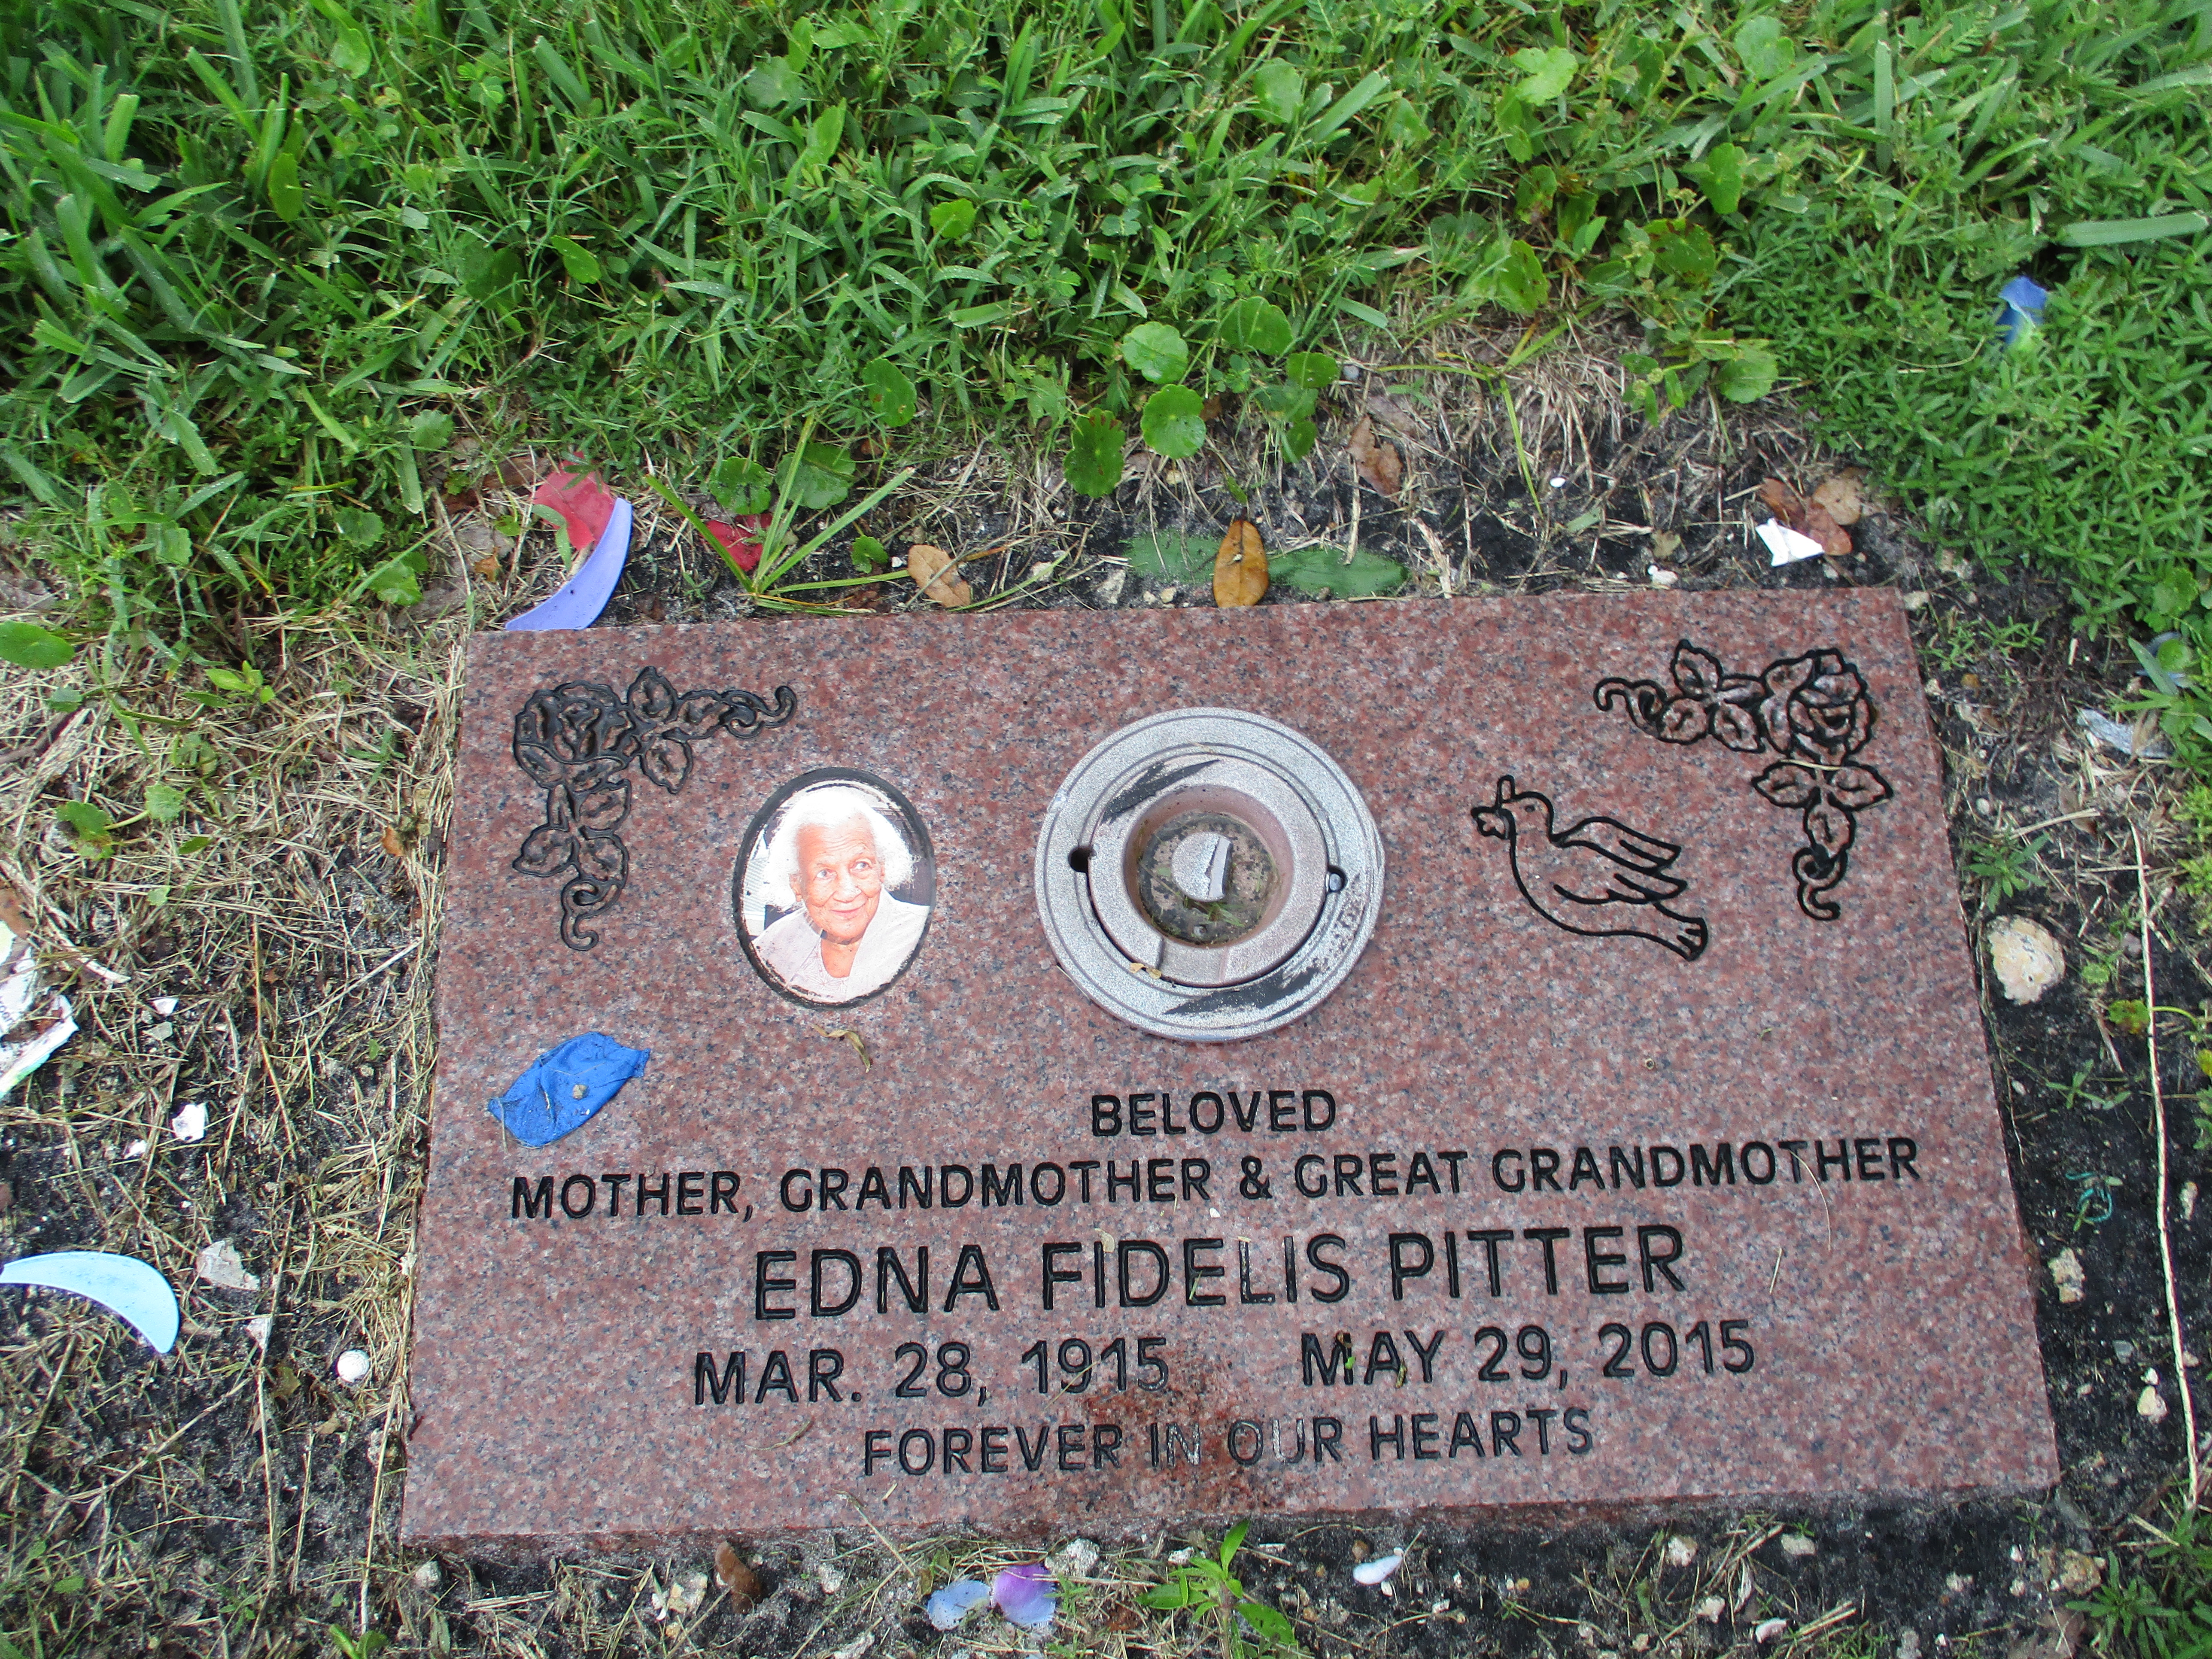 Edna Fidelis Pitter